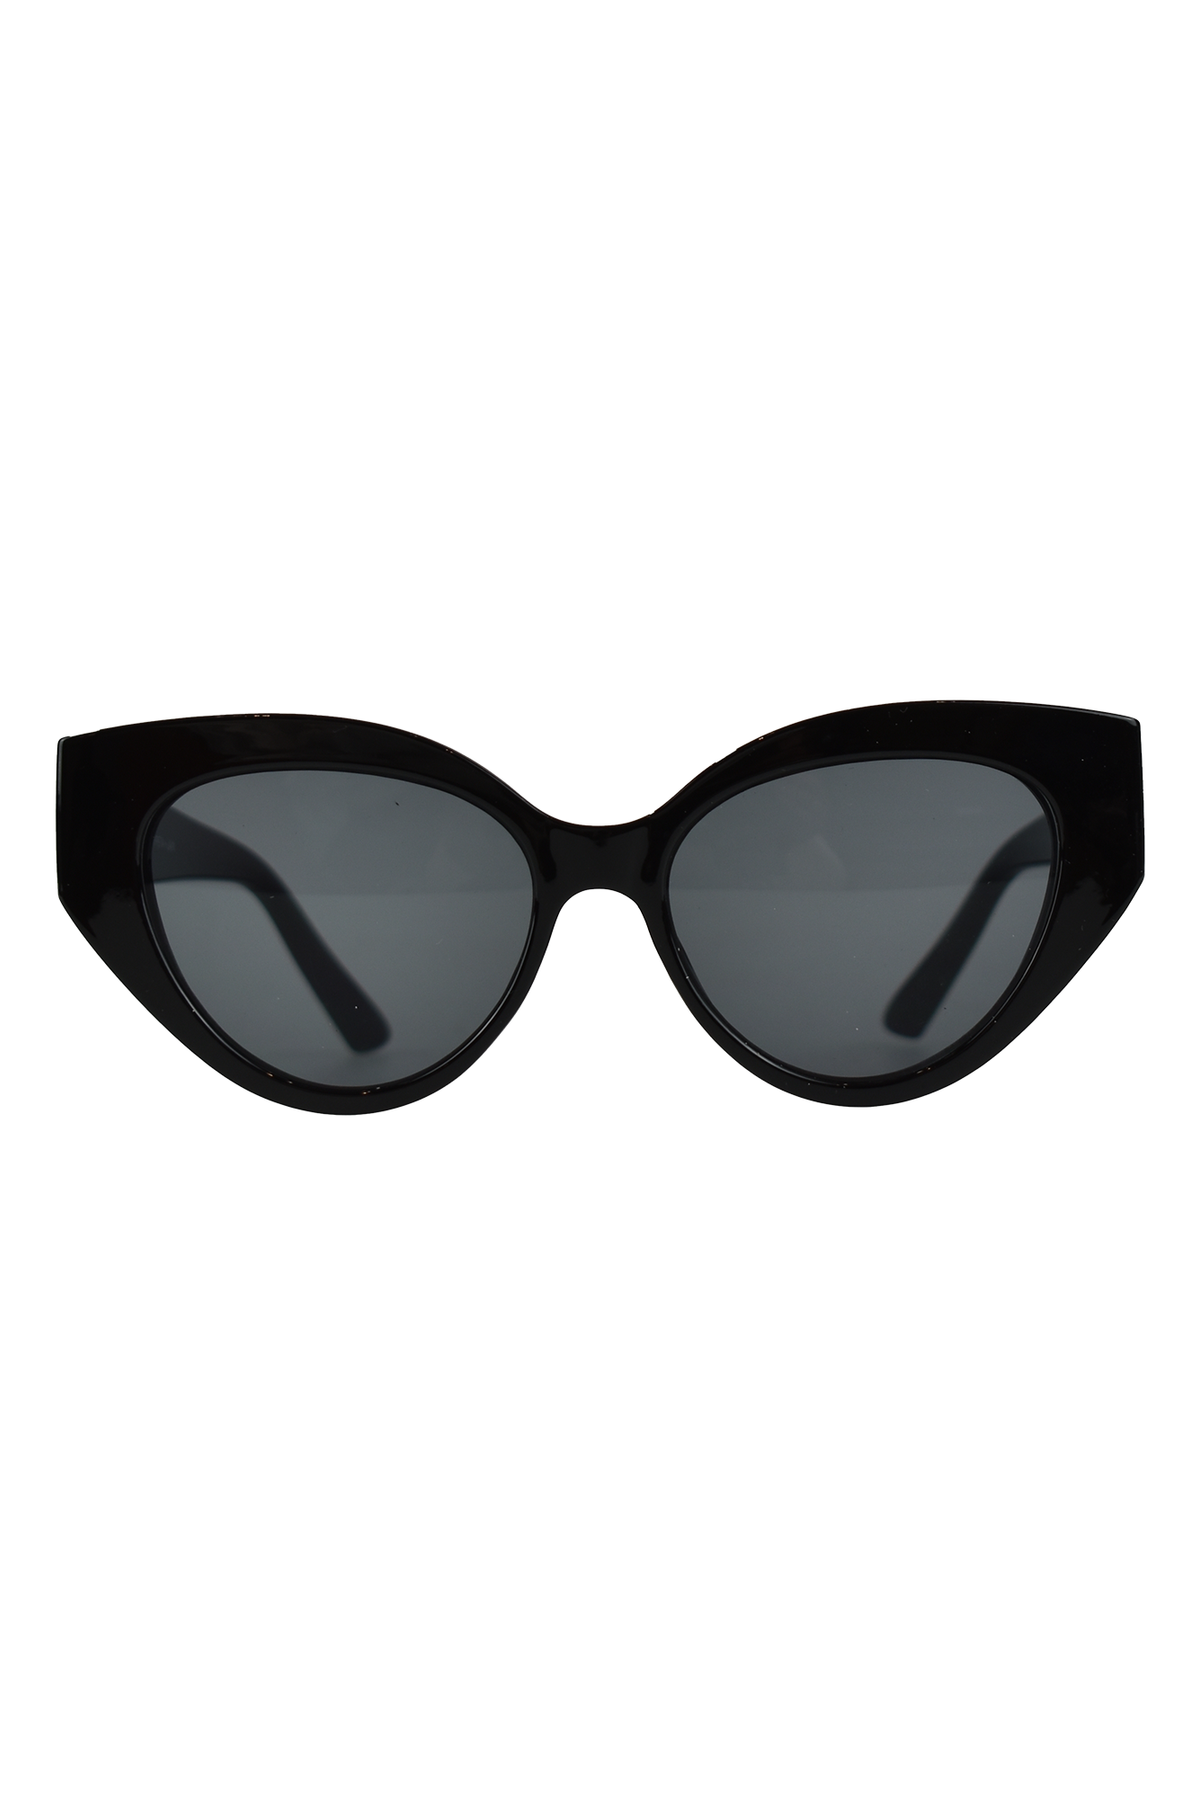 Libertine Cat Eye Sunglasses Black 